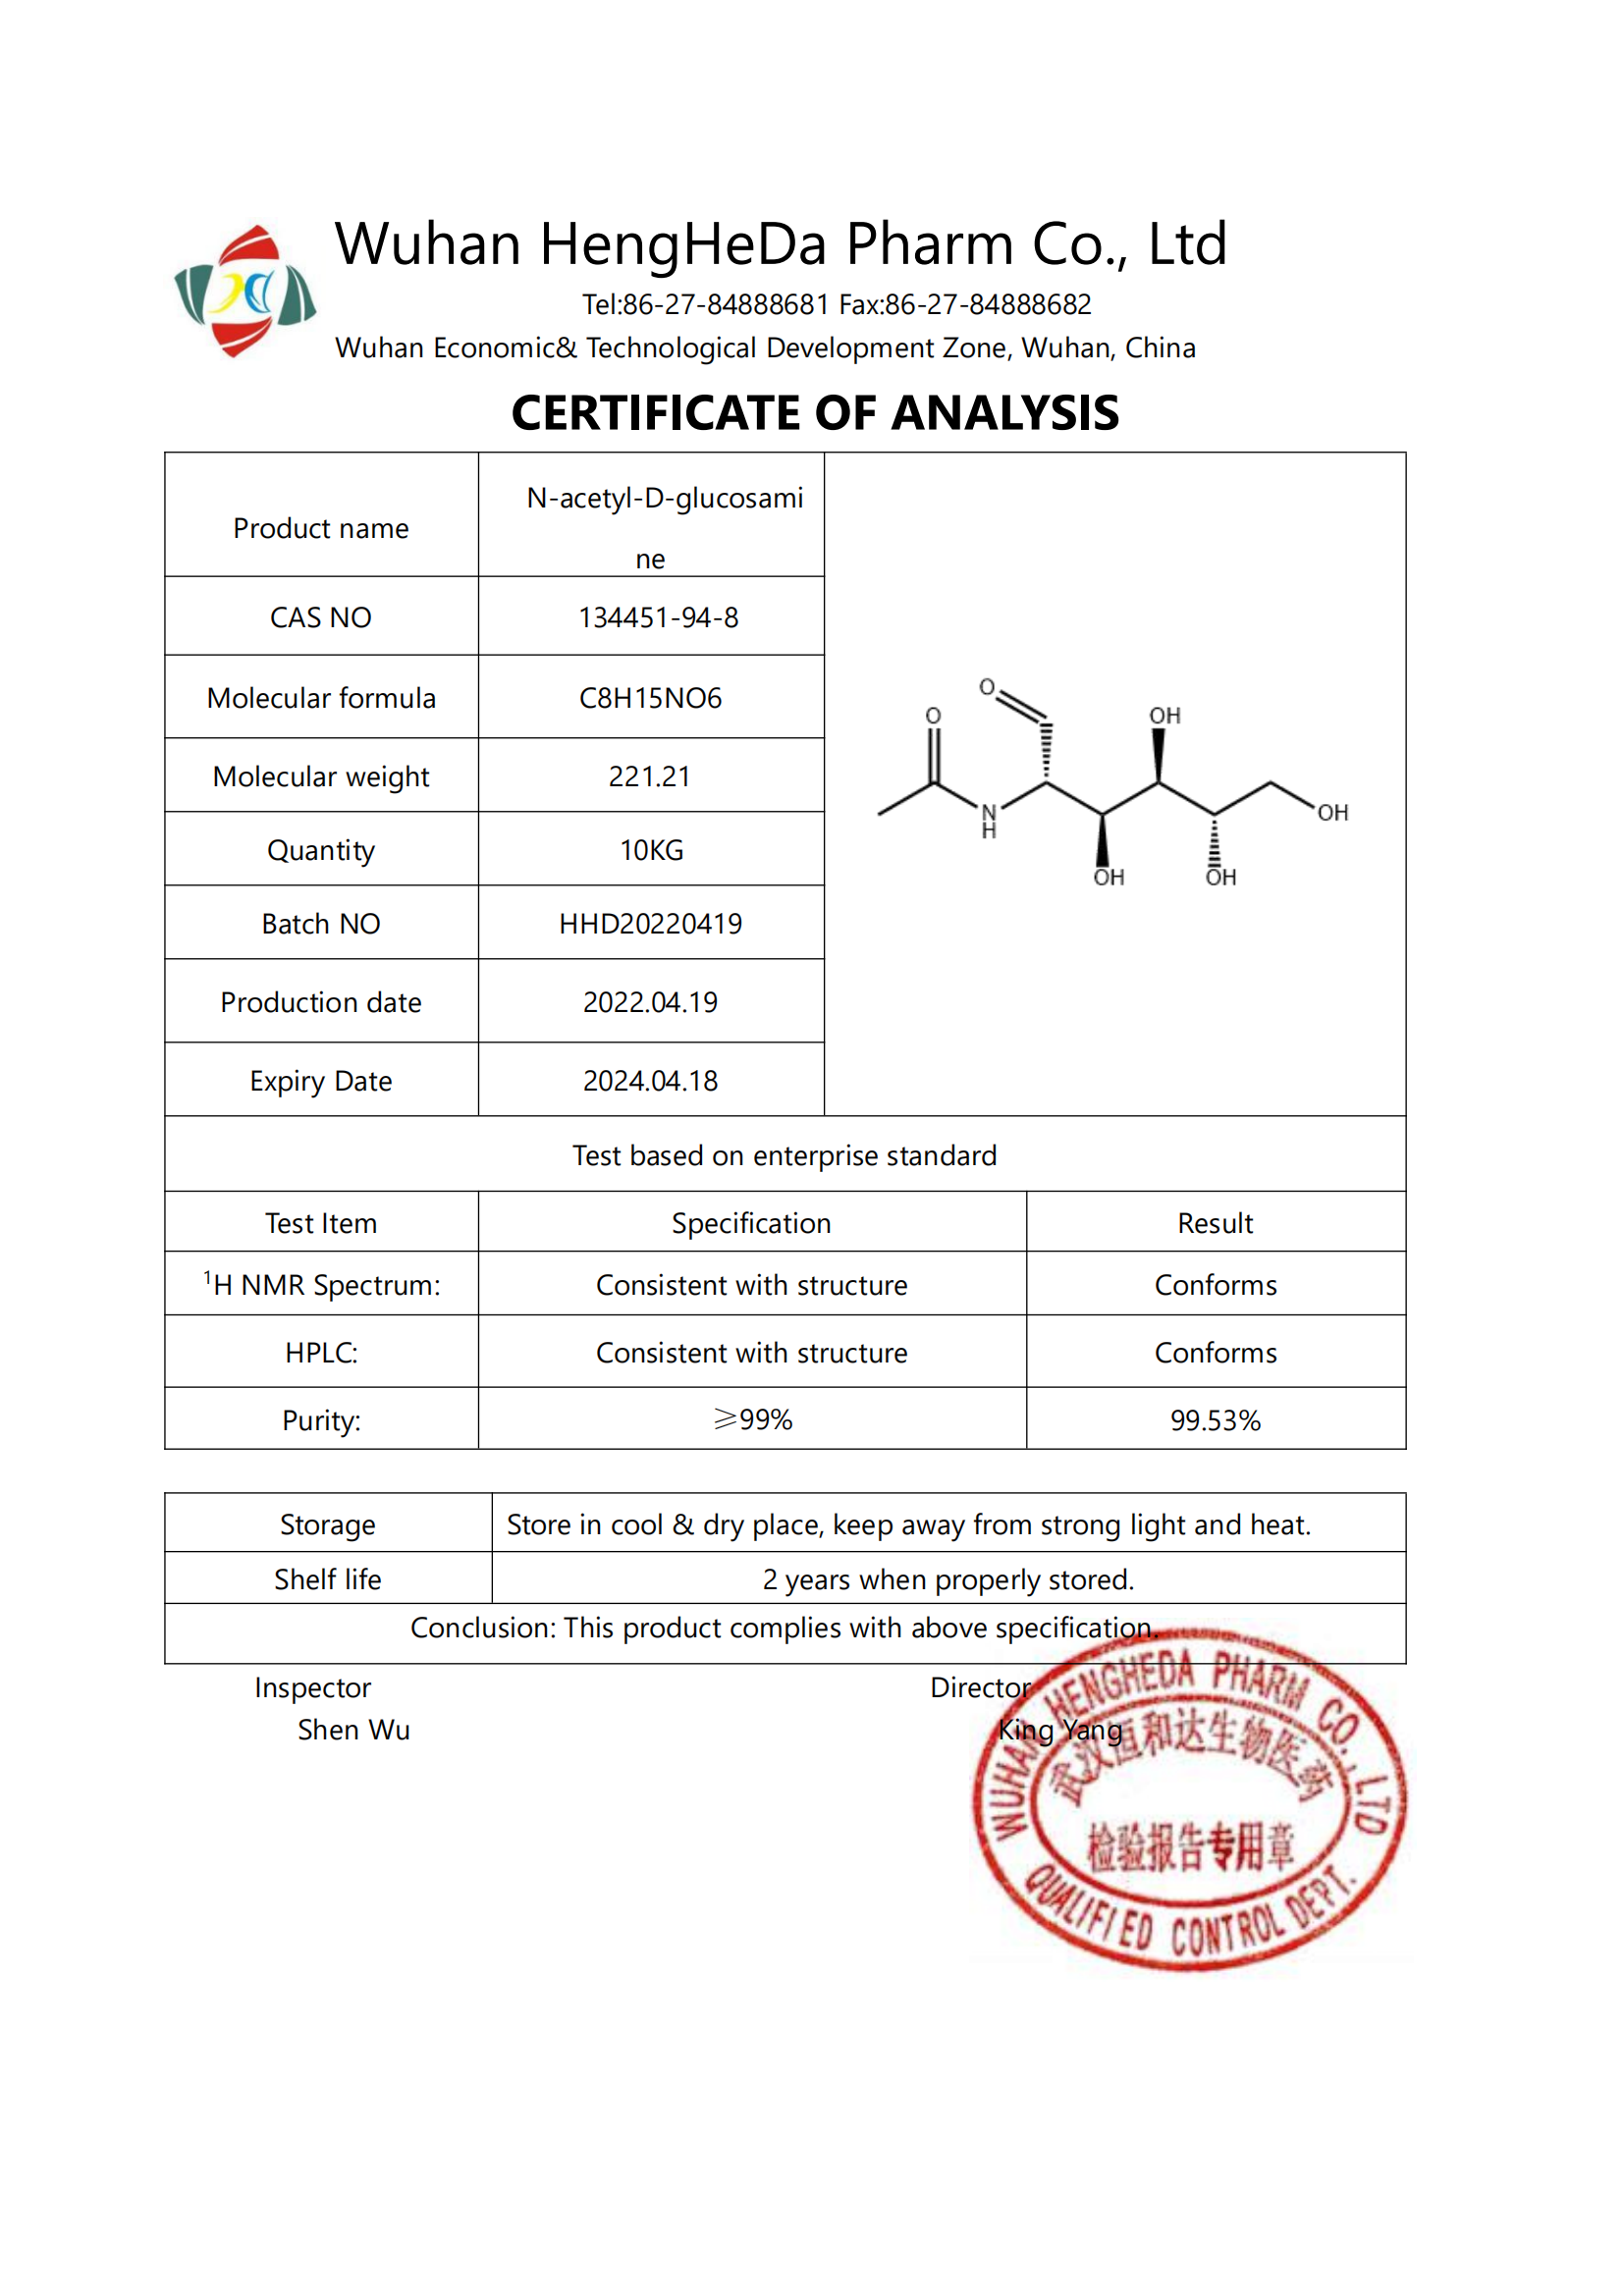 شراء جودة عالية N-ACETYL-D-GLUCOSAMINE CAS 134451-94-8 ,جودة عالية N-ACETYL-D-GLUCOSAMINE CAS 134451-94-8 الأسعار ·جودة عالية N-ACETYL-D-GLUCOSAMINE CAS 134451-94-8 العلامات التجارية ,جودة عالية N-ACETYL-D-GLUCOSAMINE CAS 134451-94-8 الصانع ,جودة عالية N-ACETYL-D-GLUCOSAMINE CAS 134451-94-8 اقتباس ·جودة عالية N-ACETYL-D-GLUCOSAMINE CAS 134451-94-8 الشركة